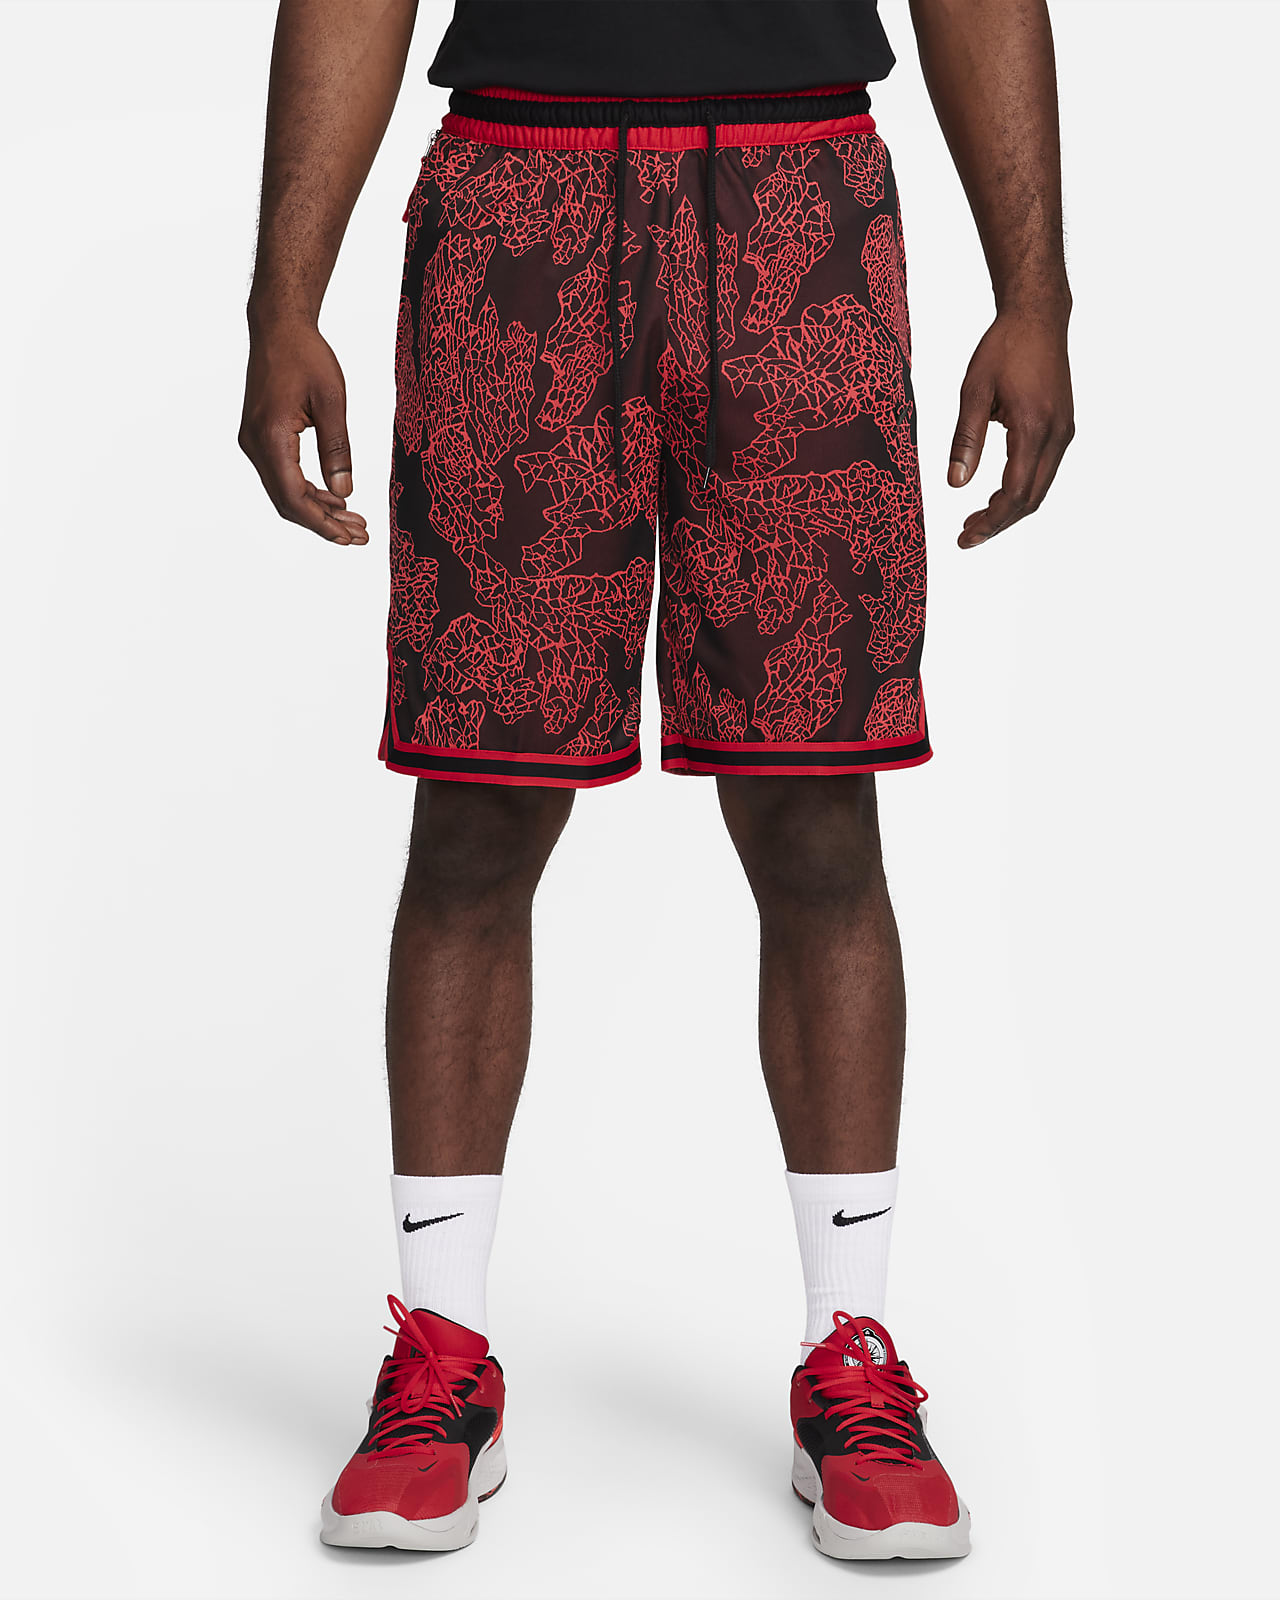 Shorts de básquetbol de 25 cm para hombre Nike Dri-FIT DNA